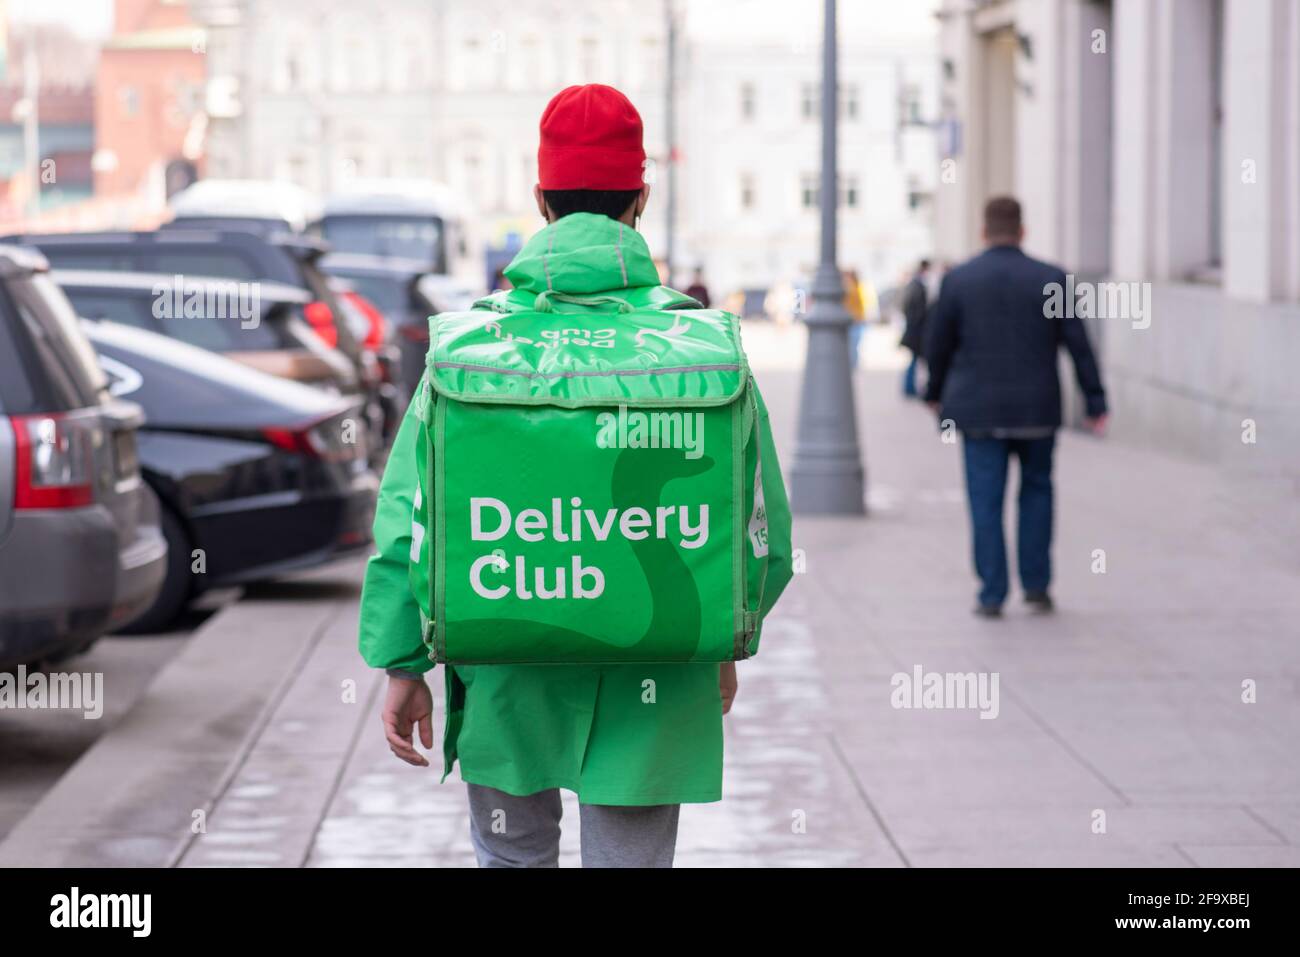 MOSKAU - APR 13: Delivery Club Company Kurier mit grüner Tasche geht in Moskau mit Auftrag, April 13. 2021 in Russland Stockfoto